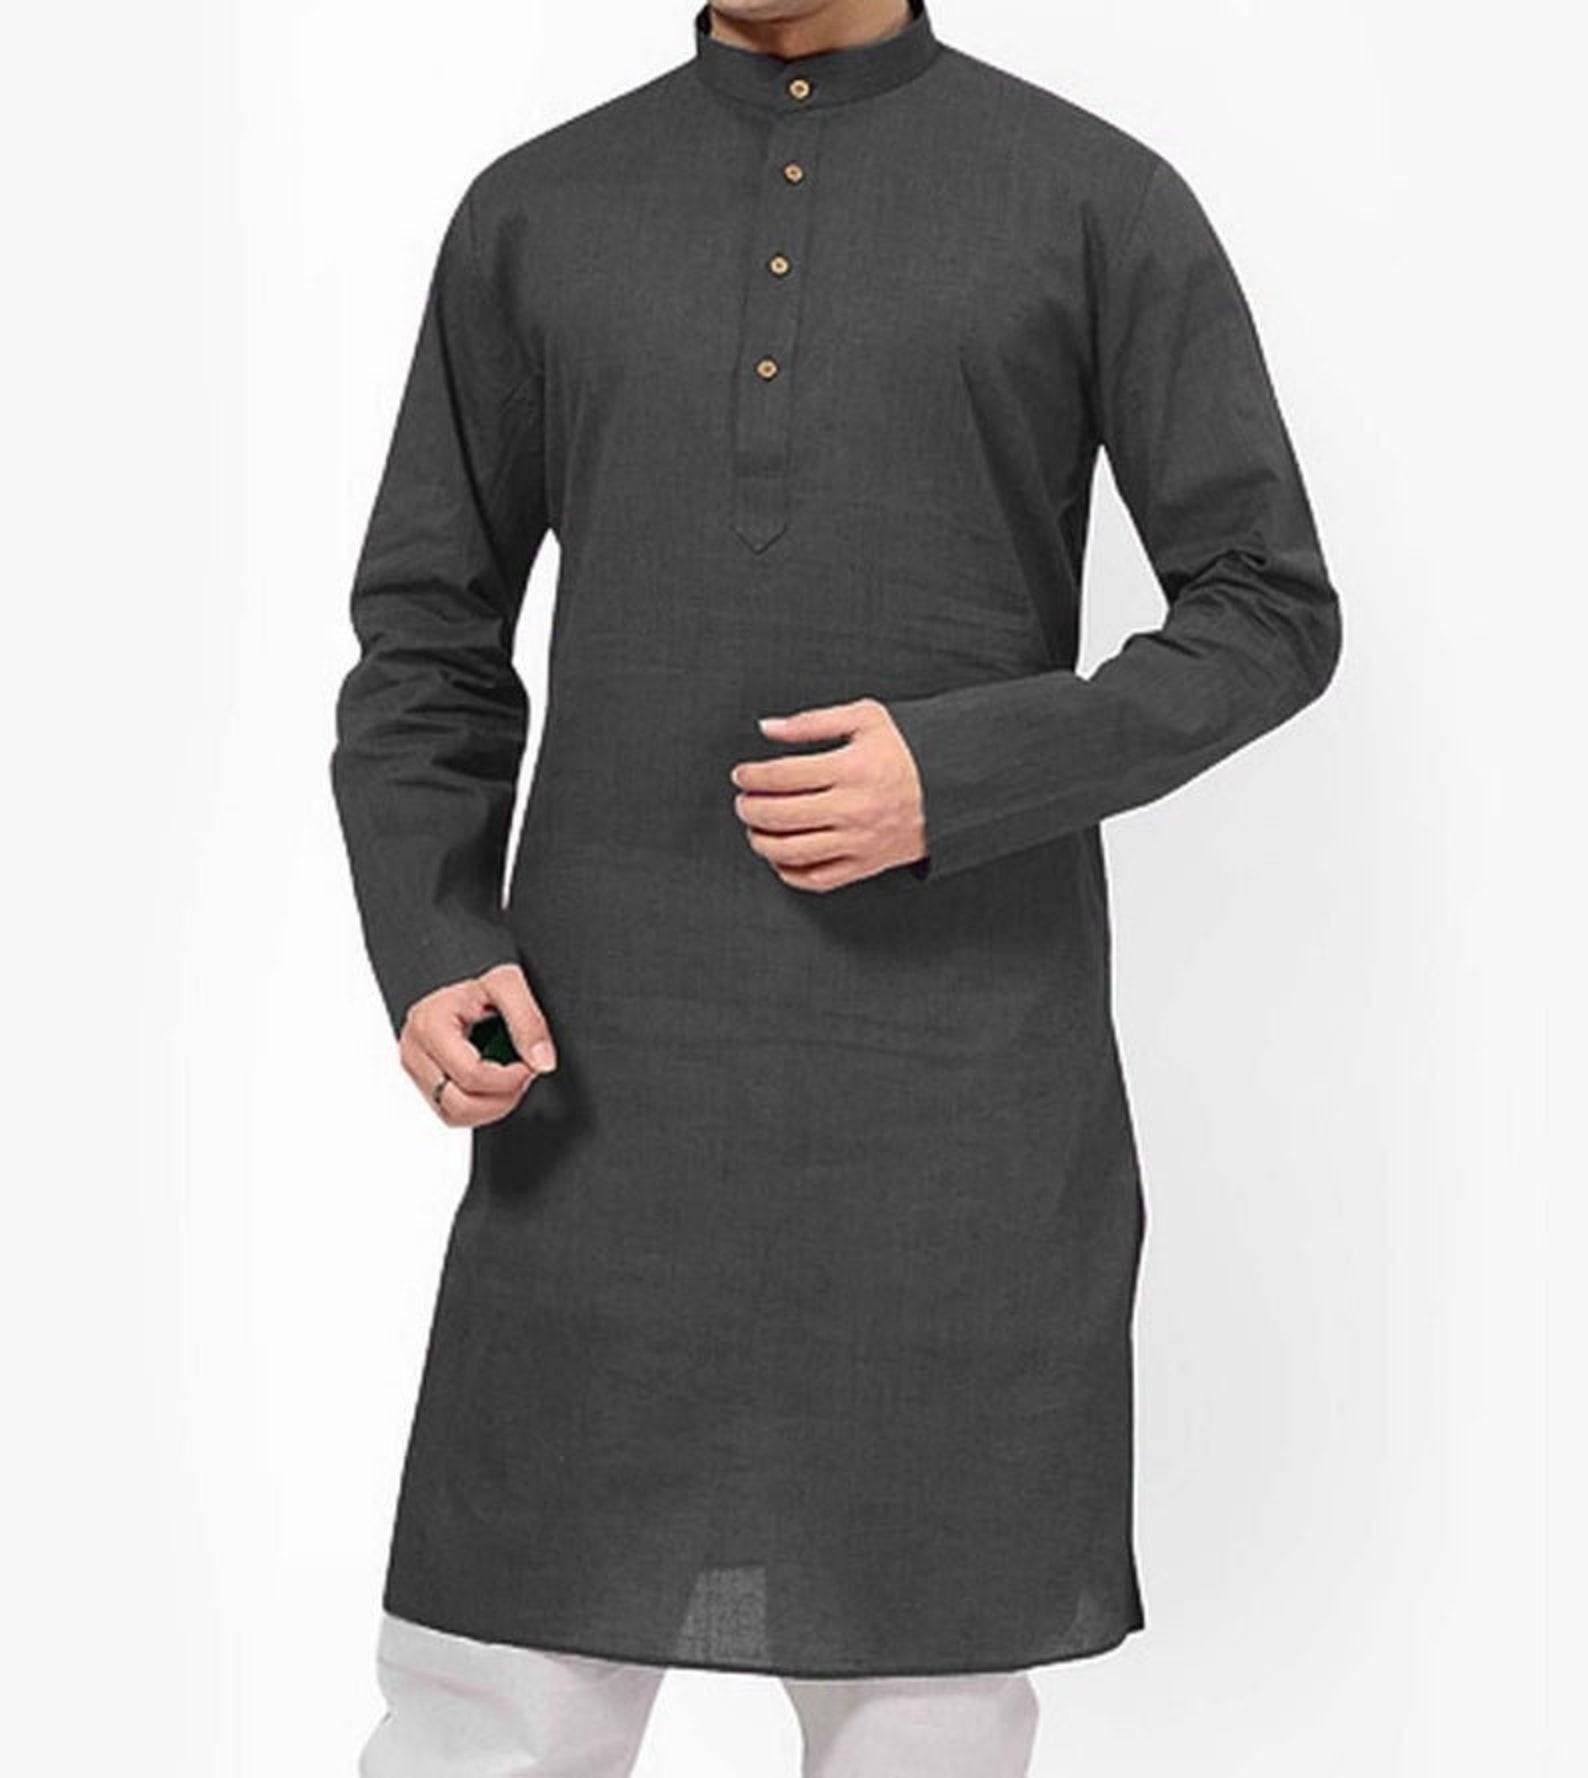 Details about   Indian Men’s Ethnic Kurta Solid Colors Kurta 100% Cotton Kurta Plus Size S-7XL 